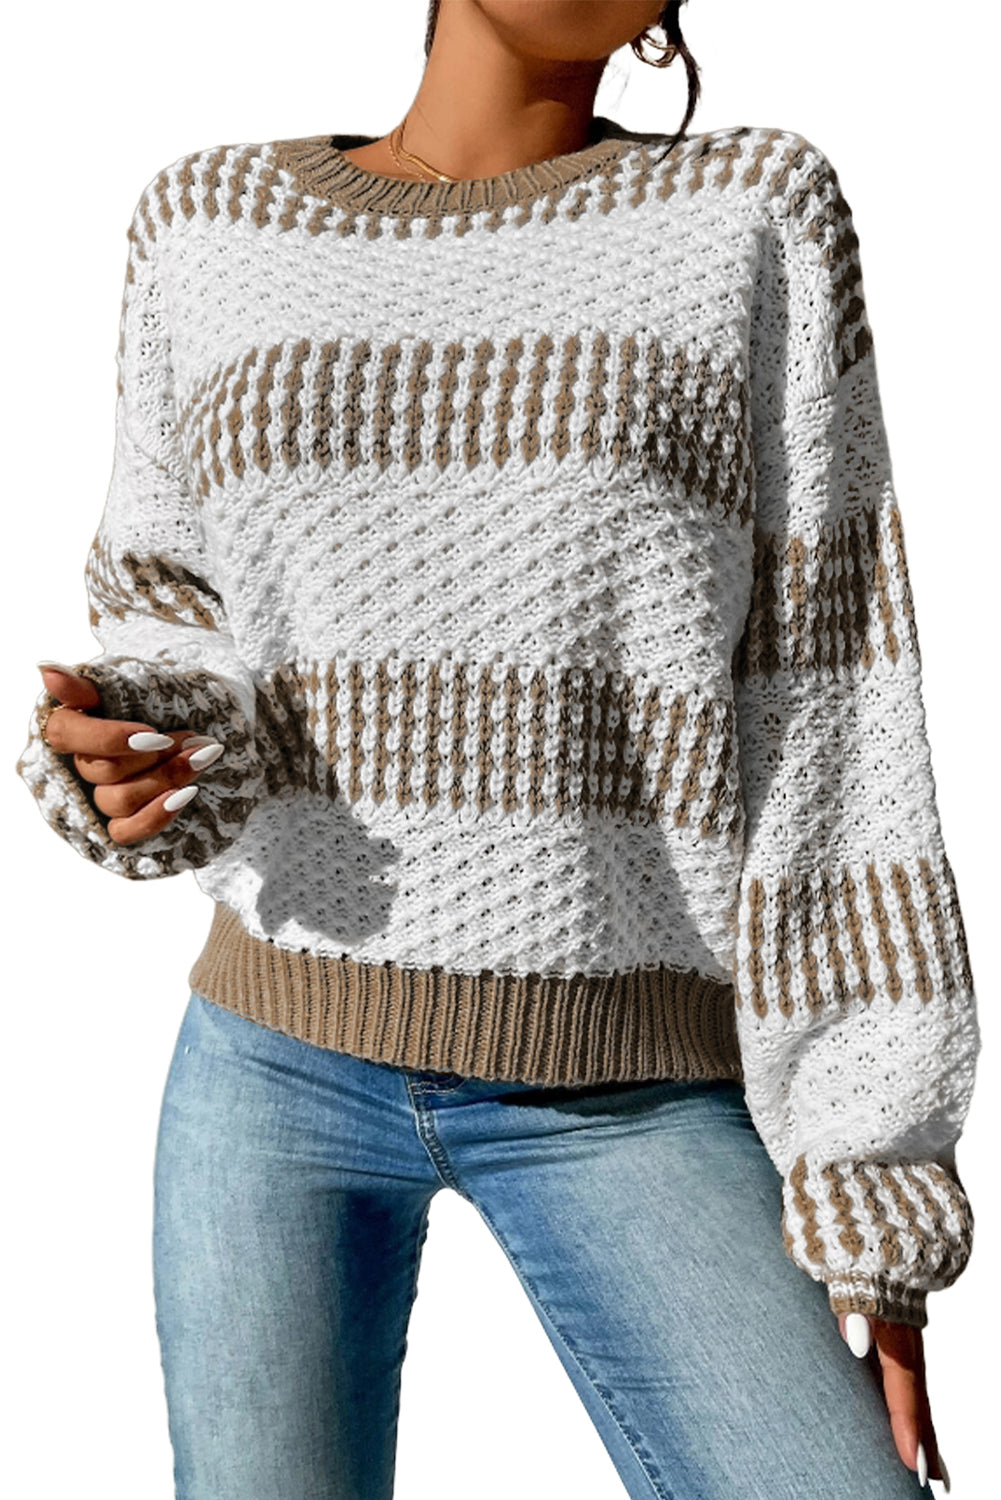 Večbarvni dvobarvni pulover z navpičnimi črtami na spuščena ramena